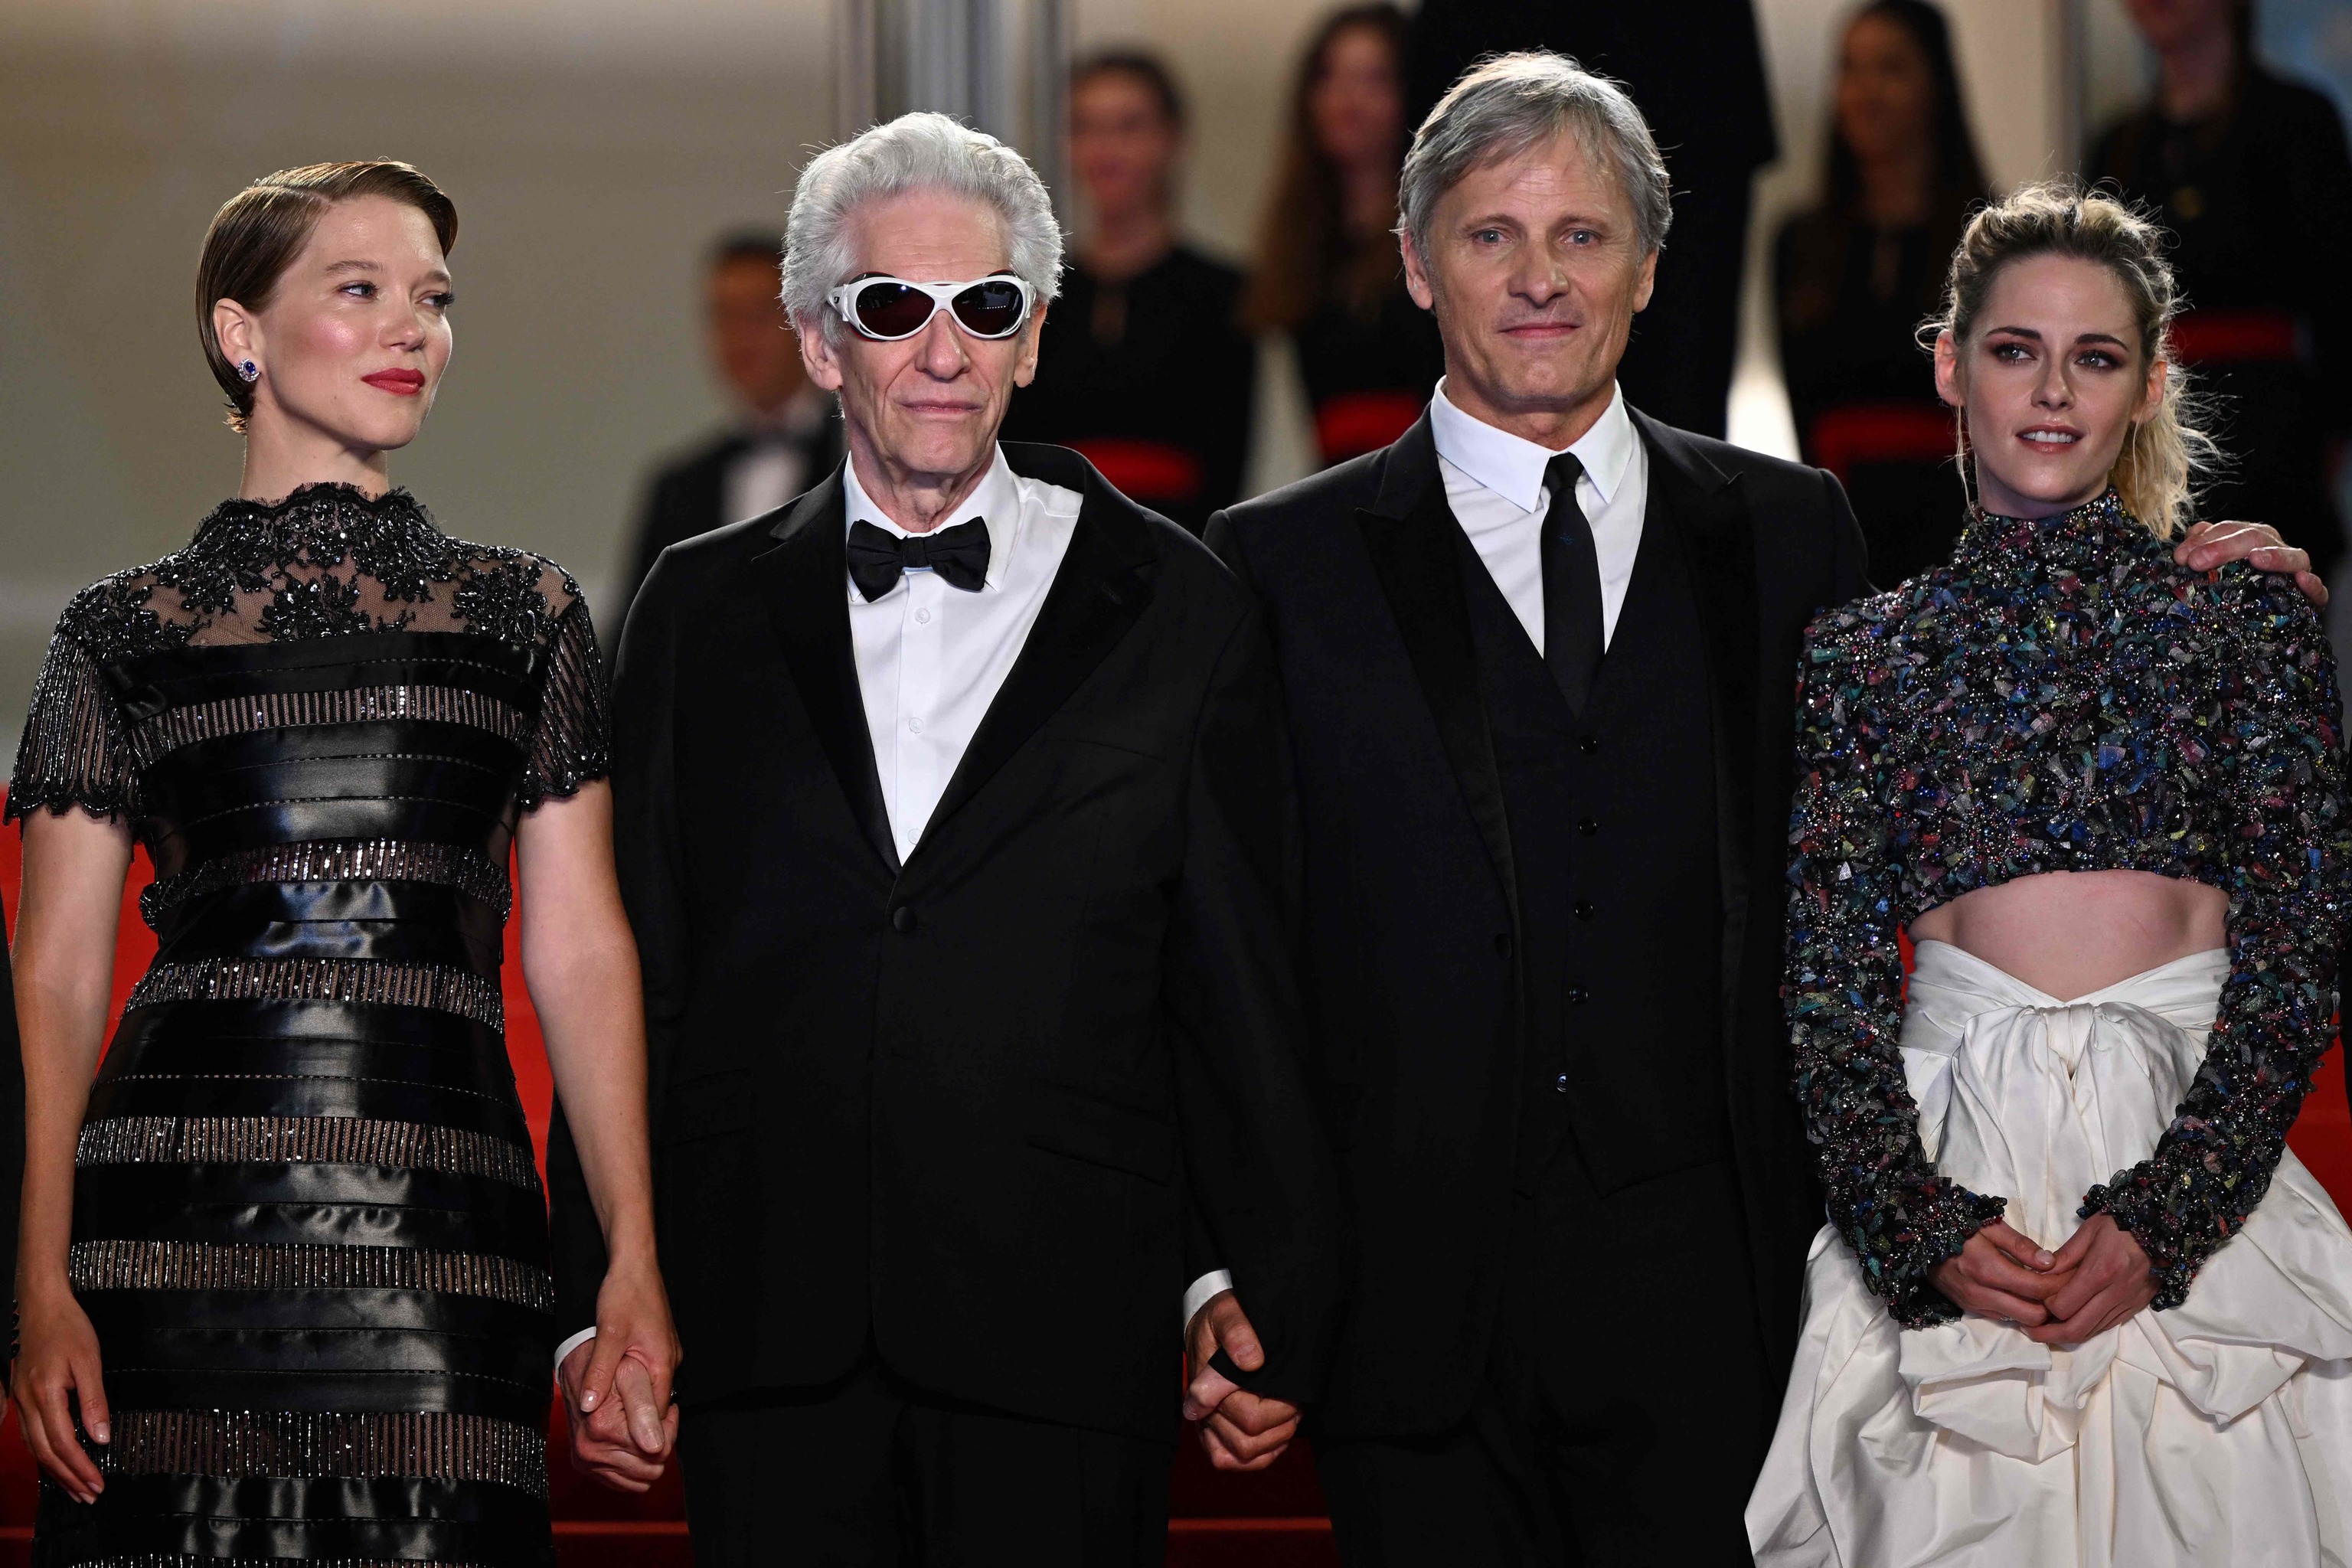 Lee Seydoux, David Cronenberg, Viggo Mortensen and Kristen Stewart upon arrival at the Cannes Film Festival.